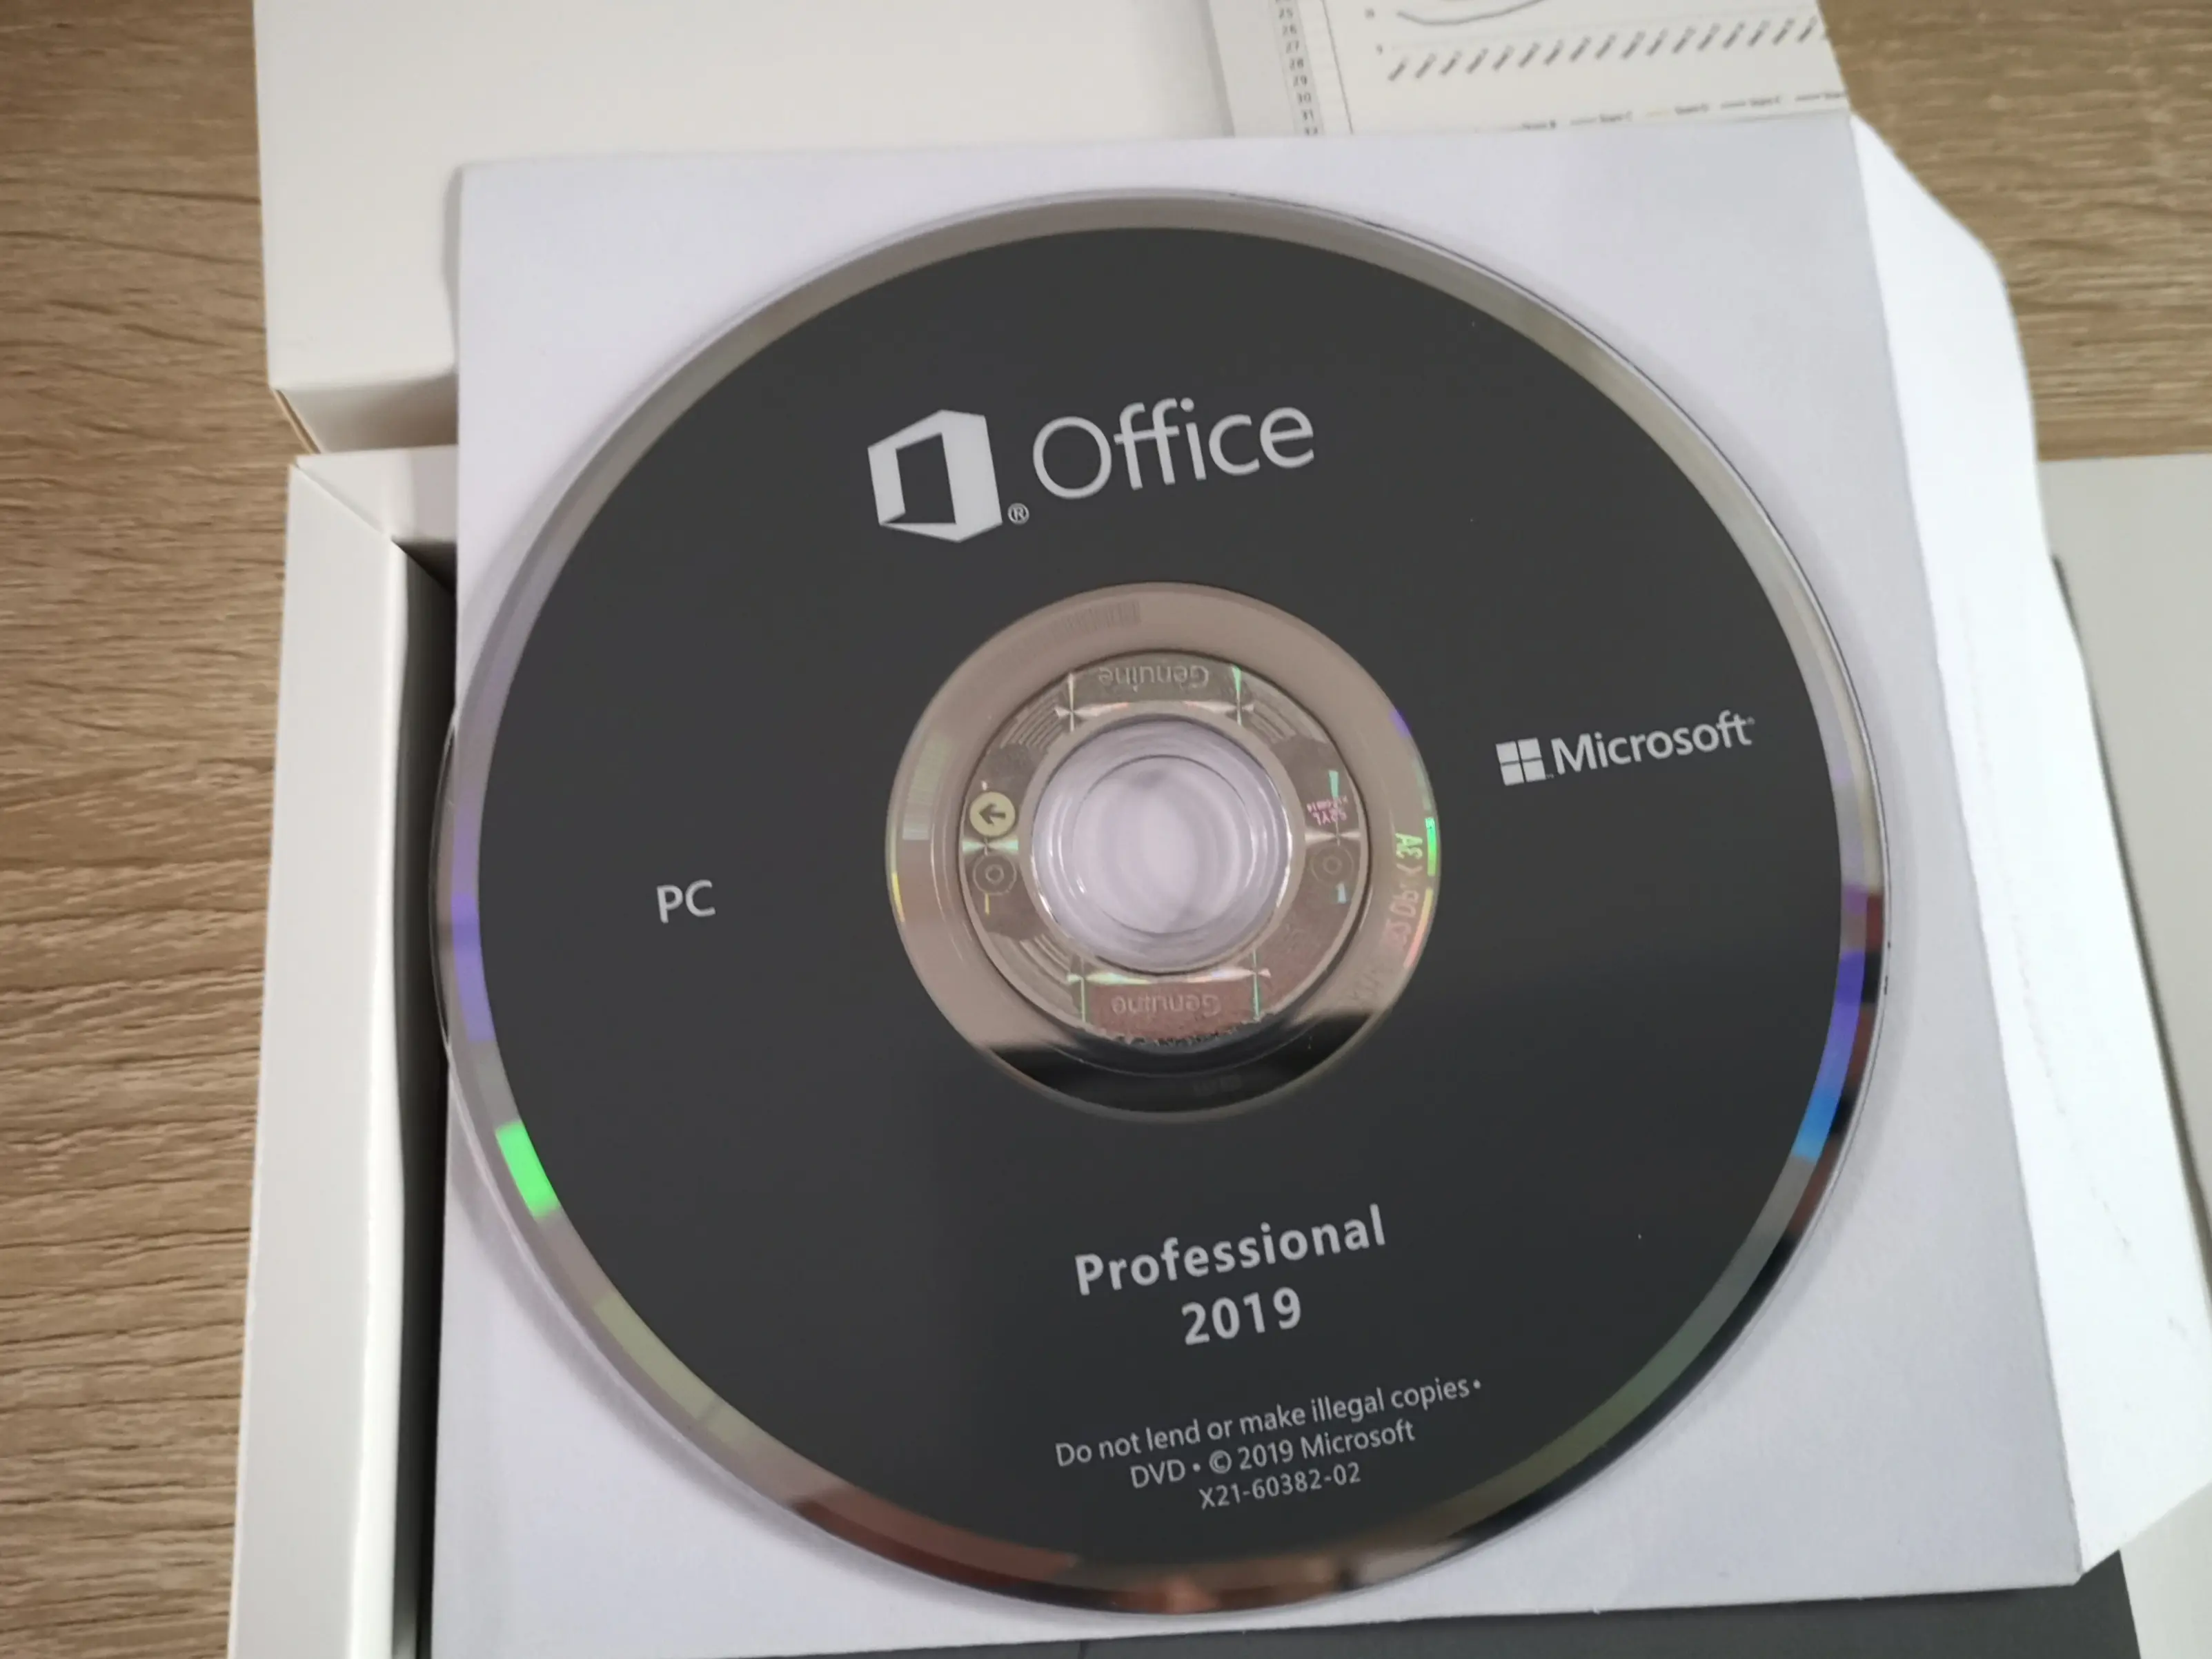 Adquiere tu licencia de Office 2019 Professional original por dólares